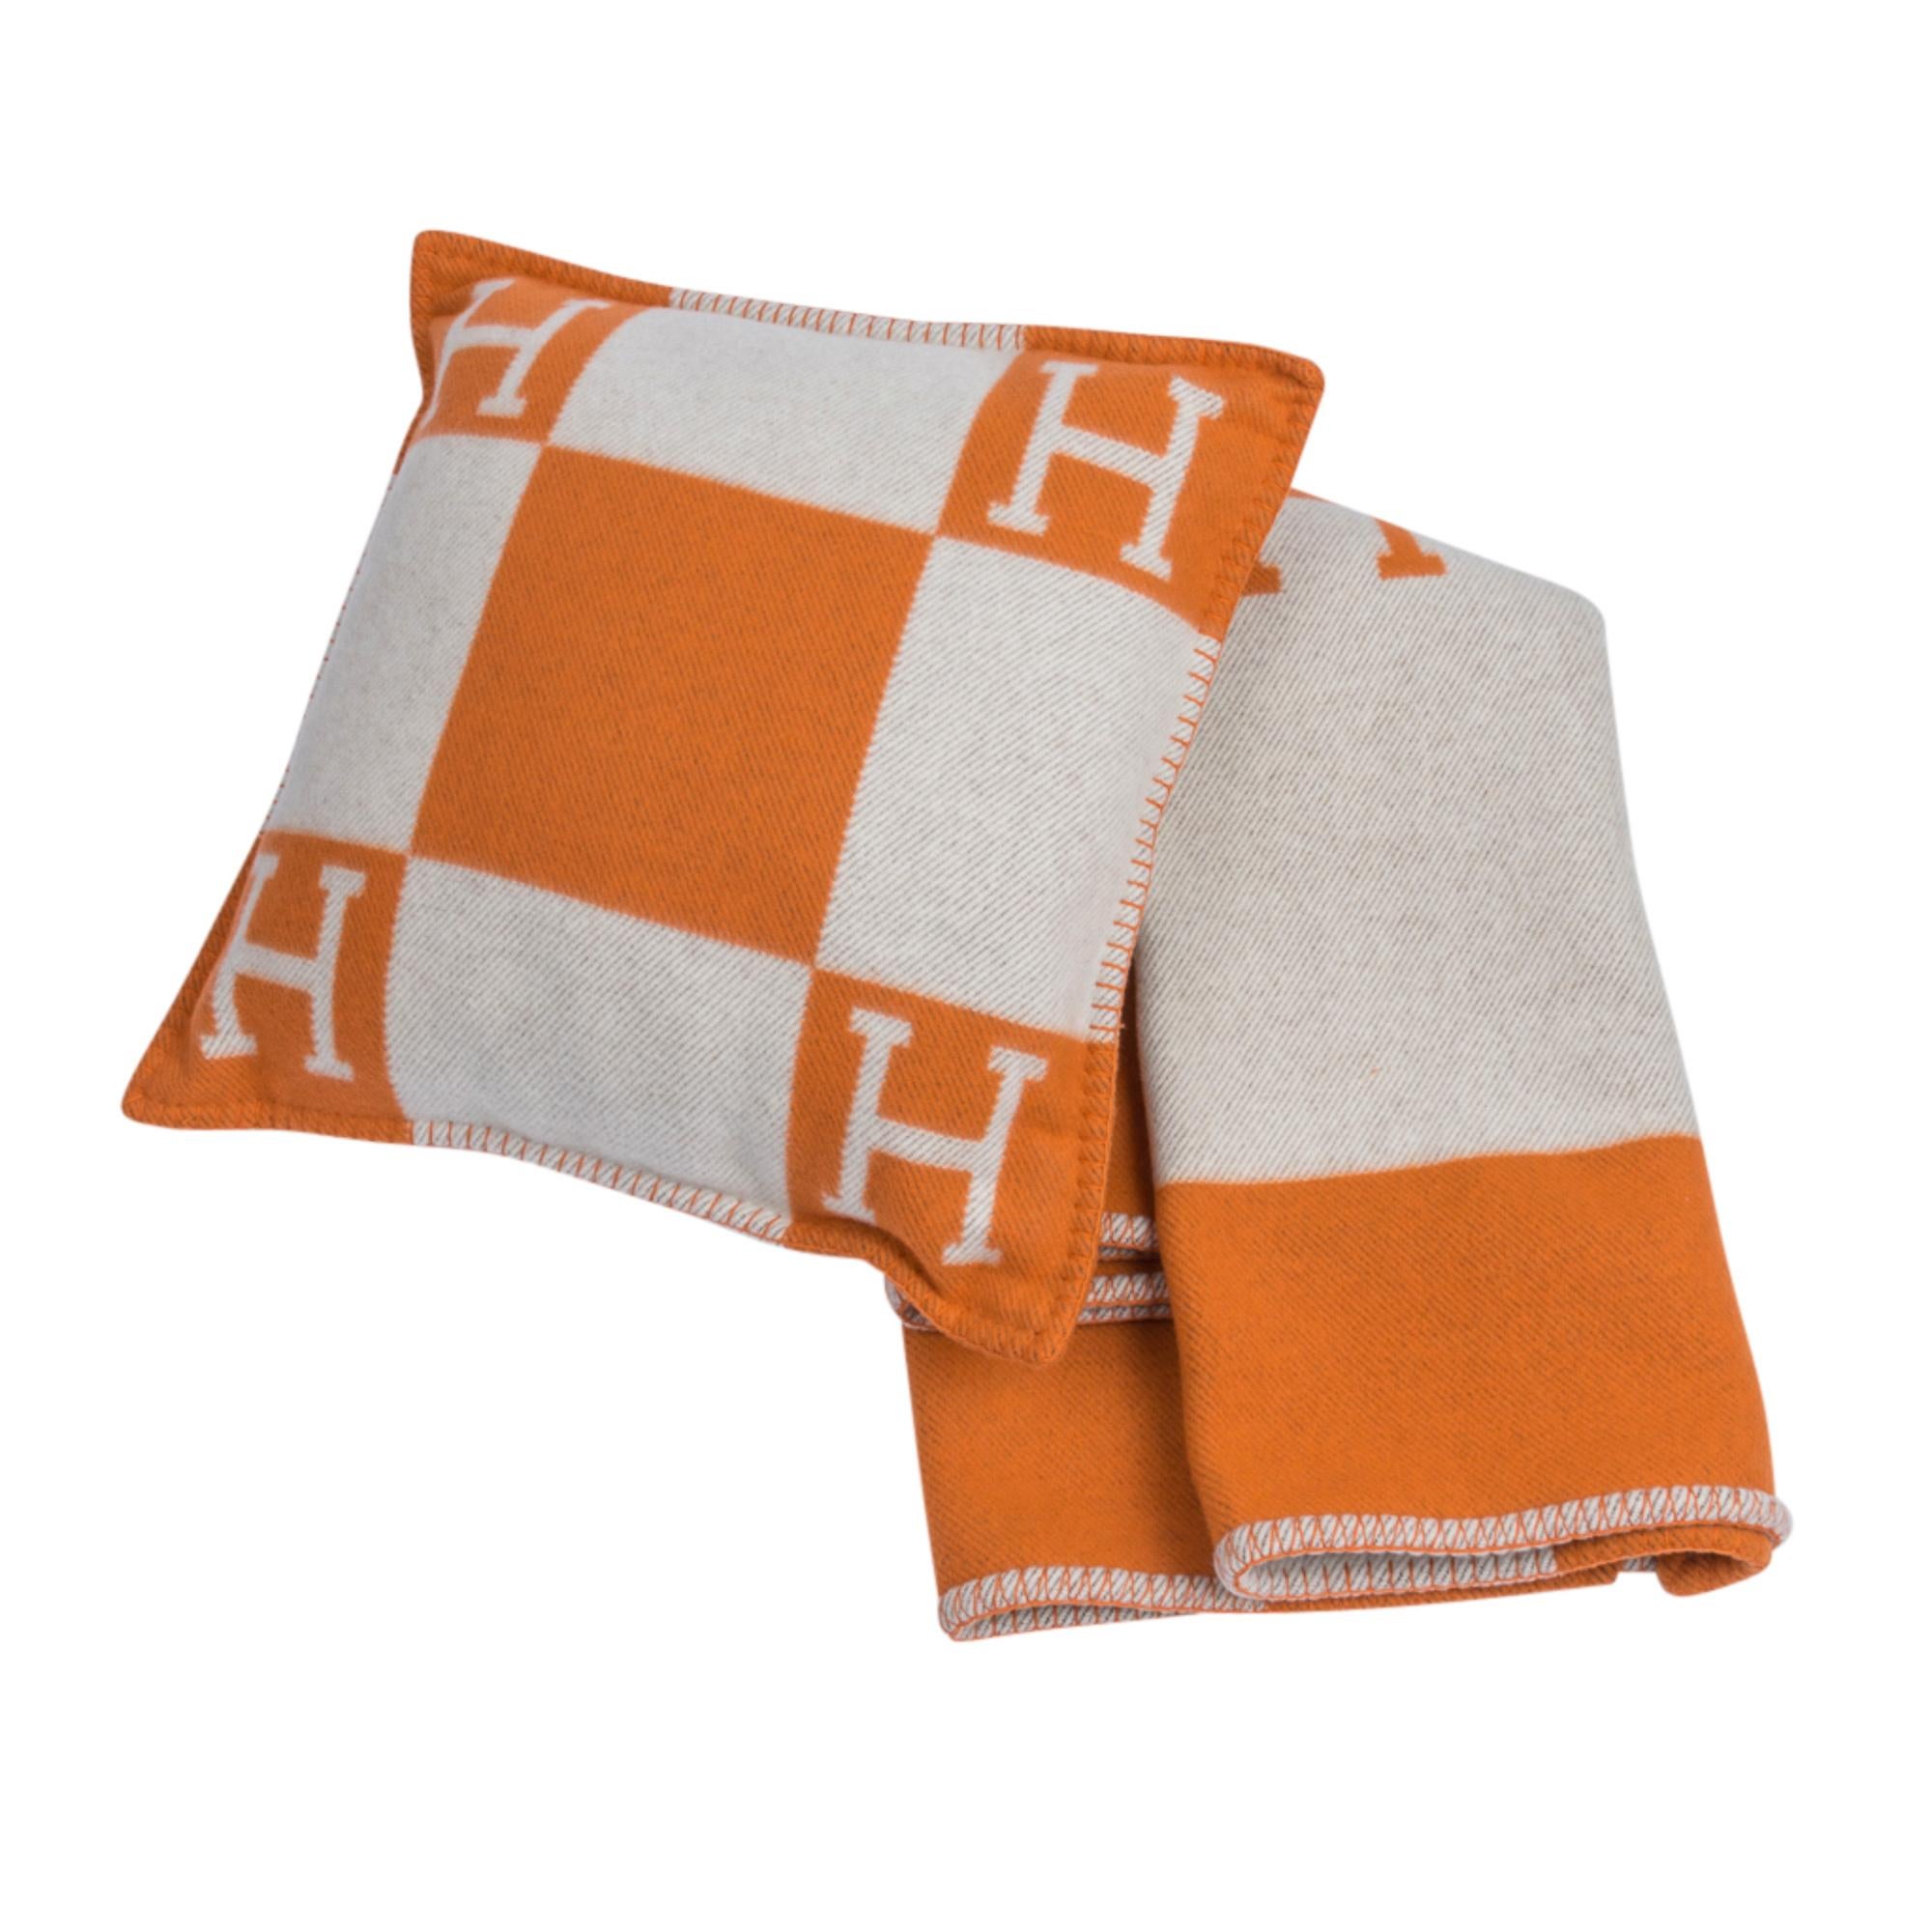 Mightychic bietet ein Hermes klassisches PM Avalon I Signatur H Kissen in Orange an.
Der abnehmbare Bezug besteht aus 85 % Wolle und 15 % Kaschmir und hat Peitschenstichkanten.
Neu oder tadelloser Zustand.  
Wird mit Schlafwagen